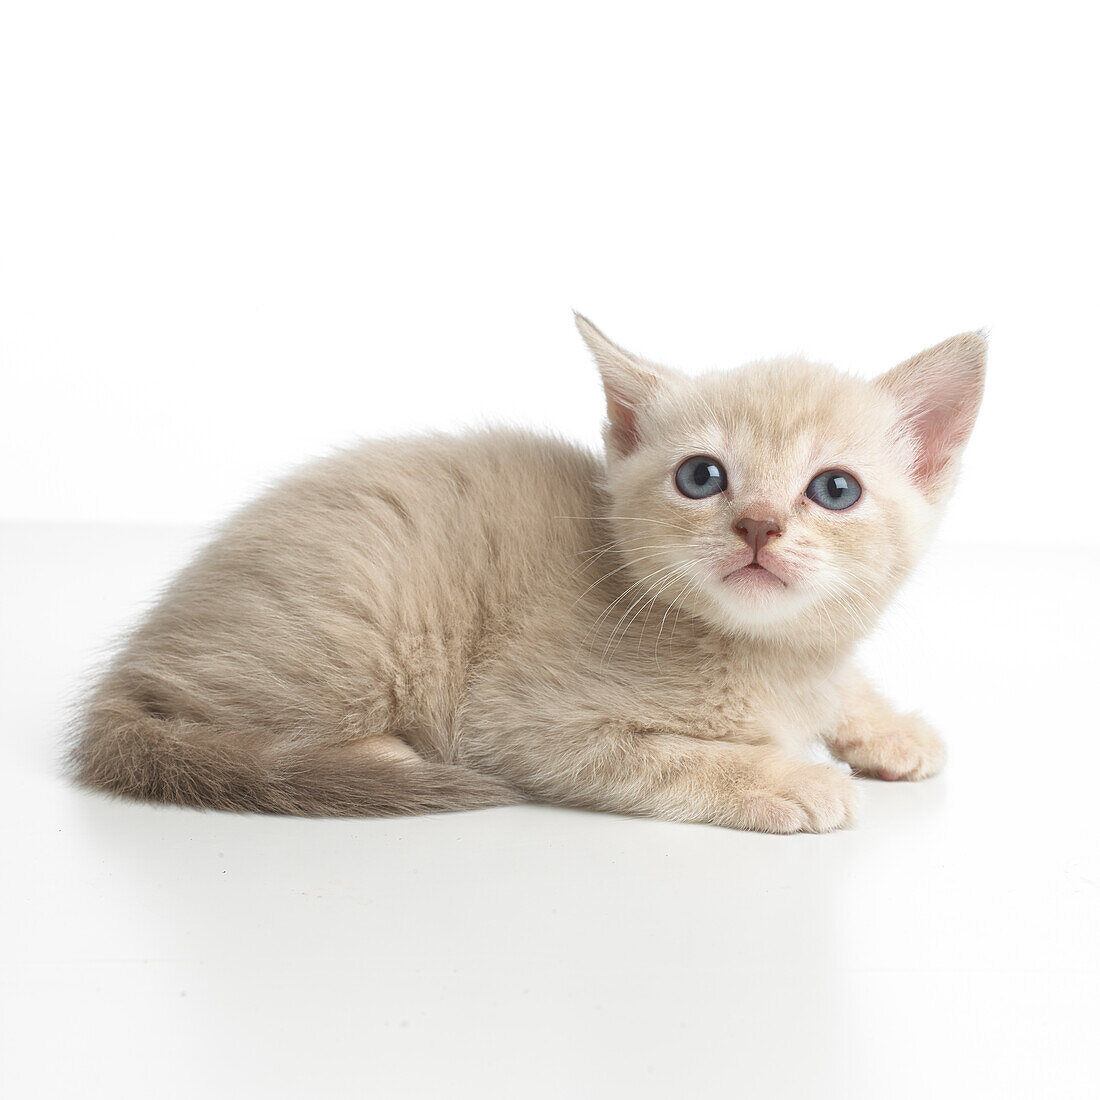 Burmese cross breed kitten